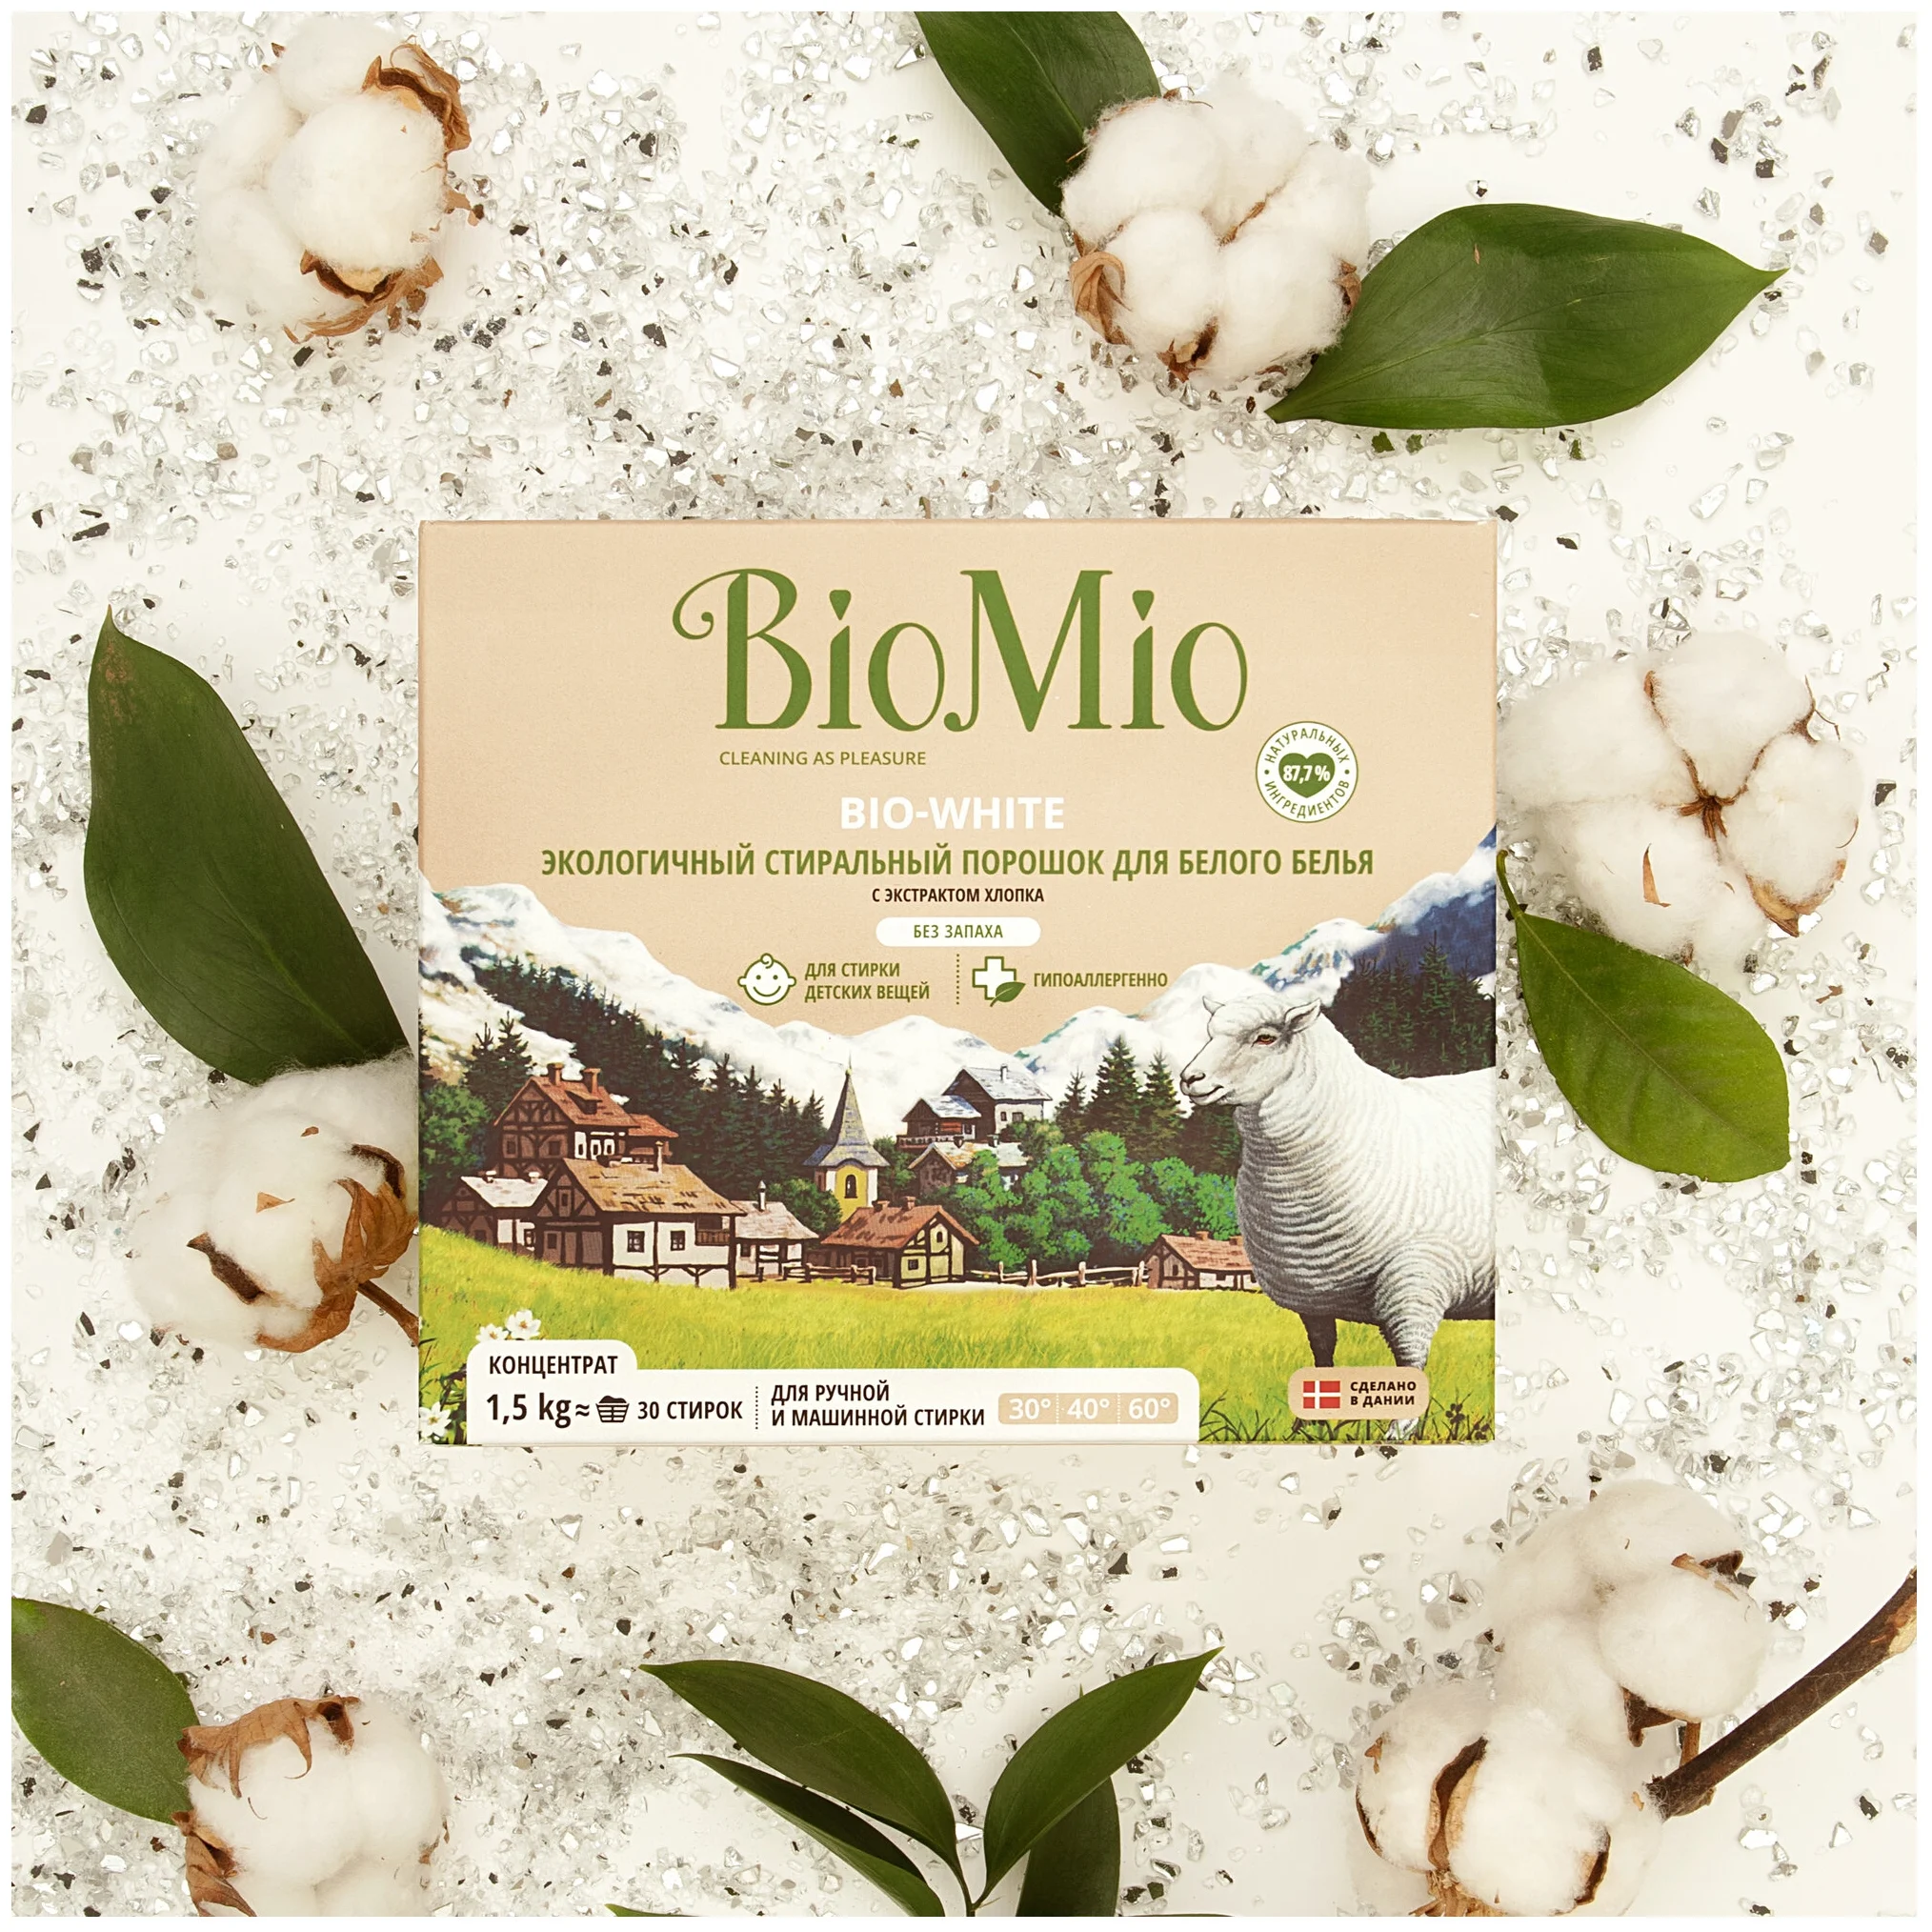 BioMio BIO-WHITE - не содержит: фосфаты